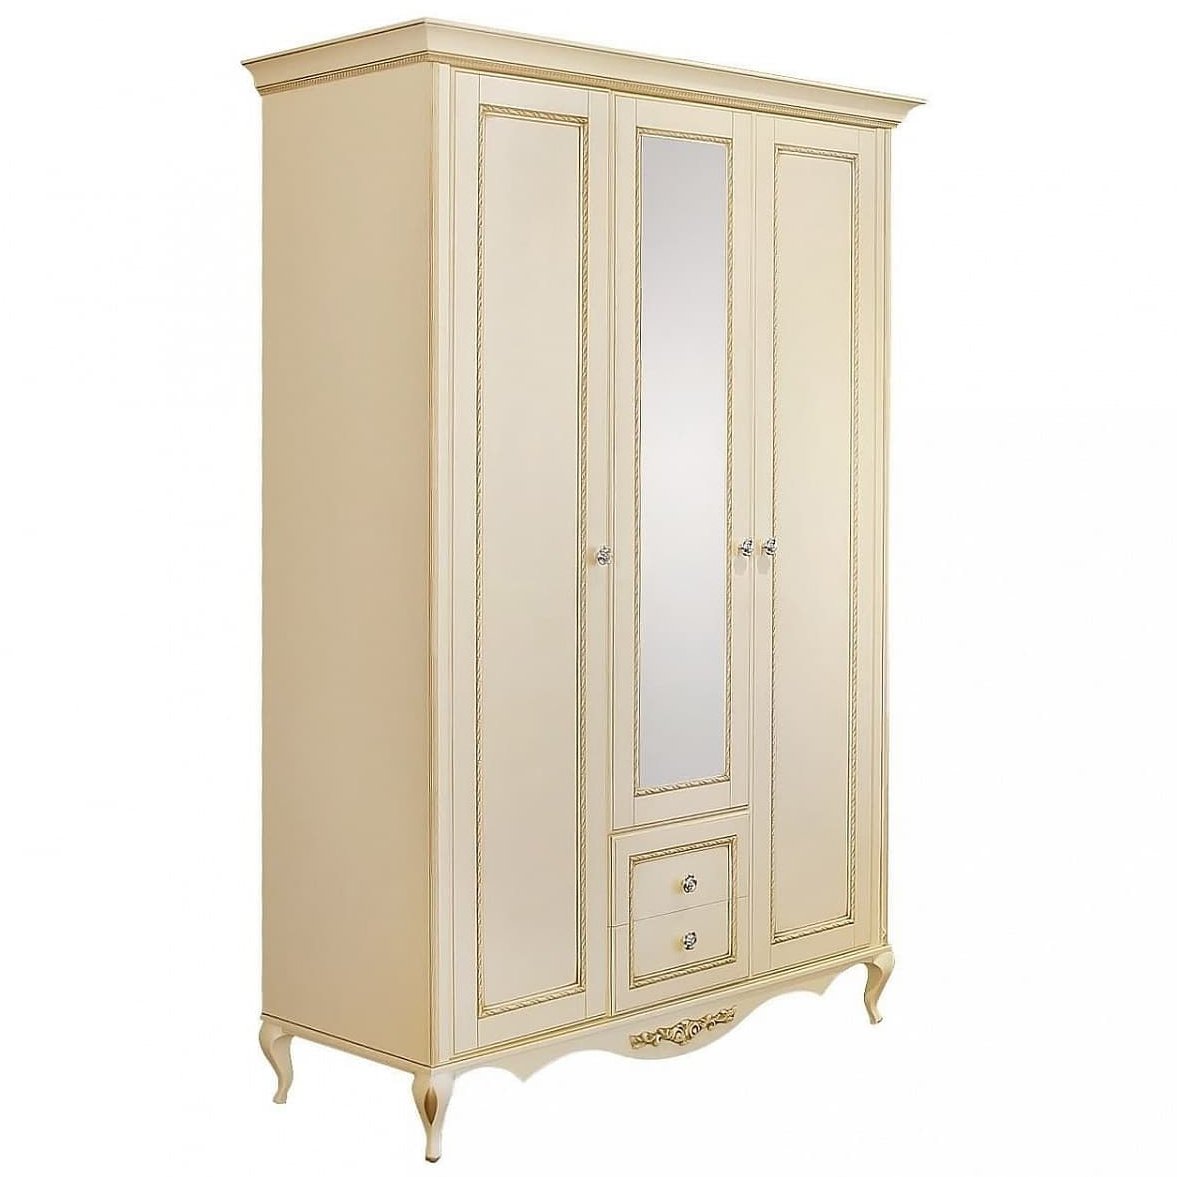 Шкаф платяной Timber Неаполь, 3-х дверный с зеркалом 159x65x227 см цвет: ваниль с золотом (T-523)T-523